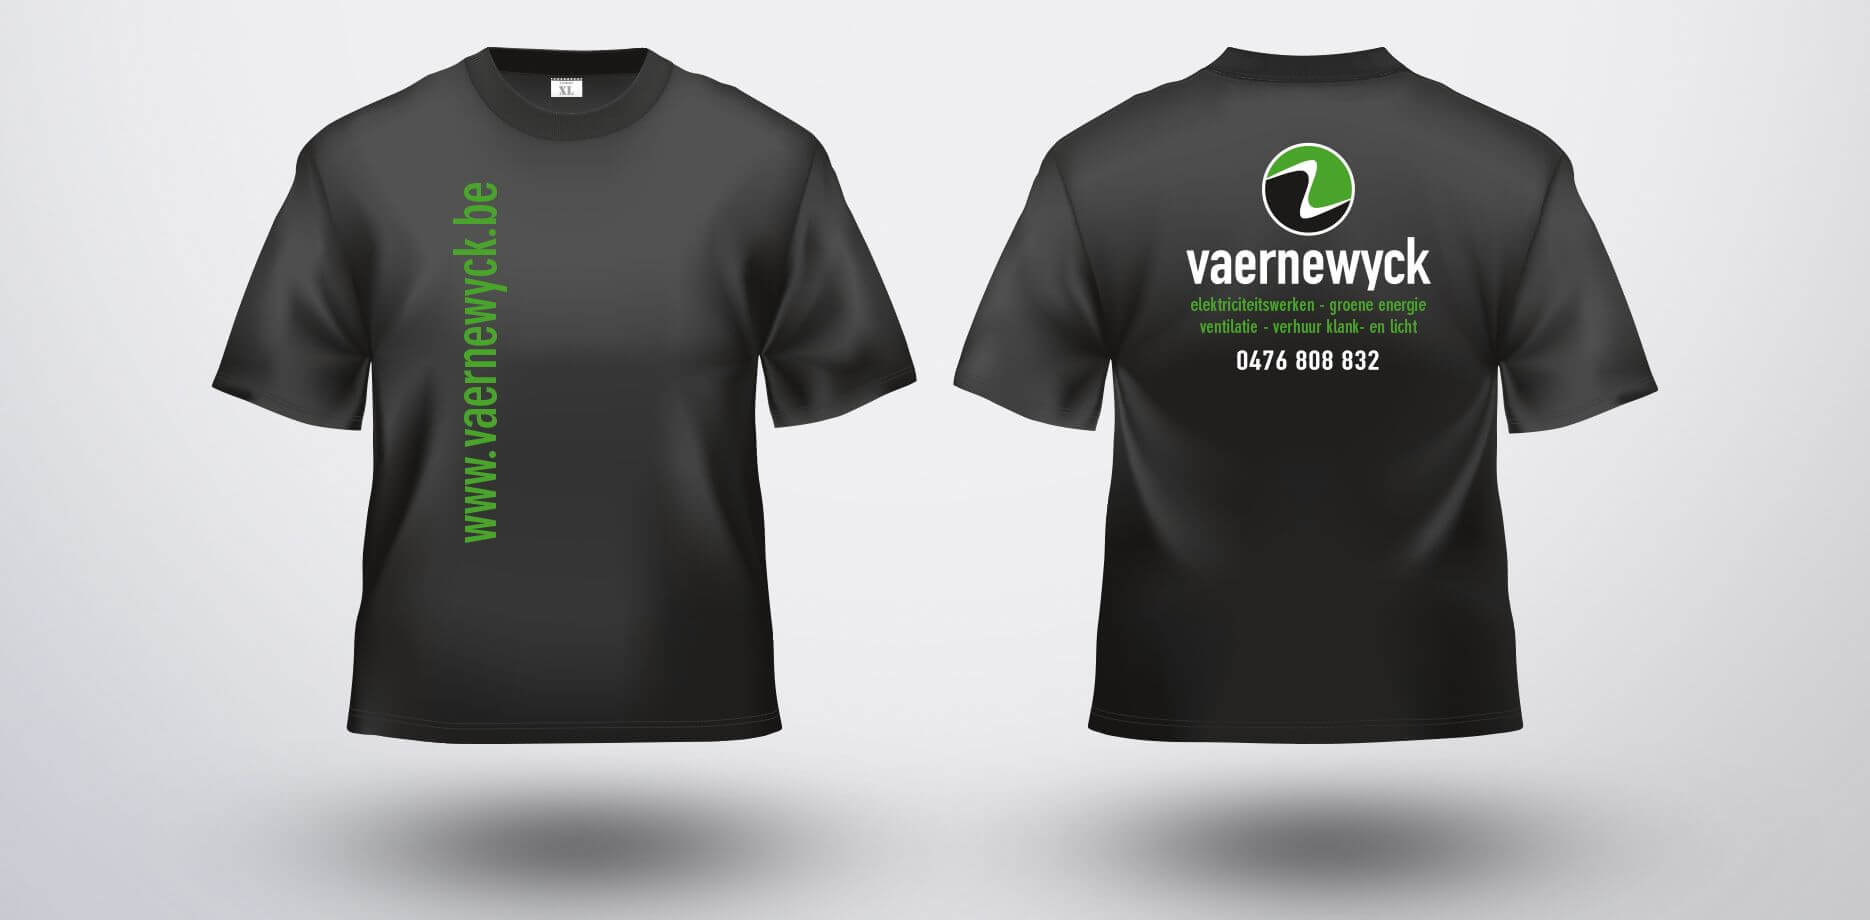 Vaernewyck T-shirts